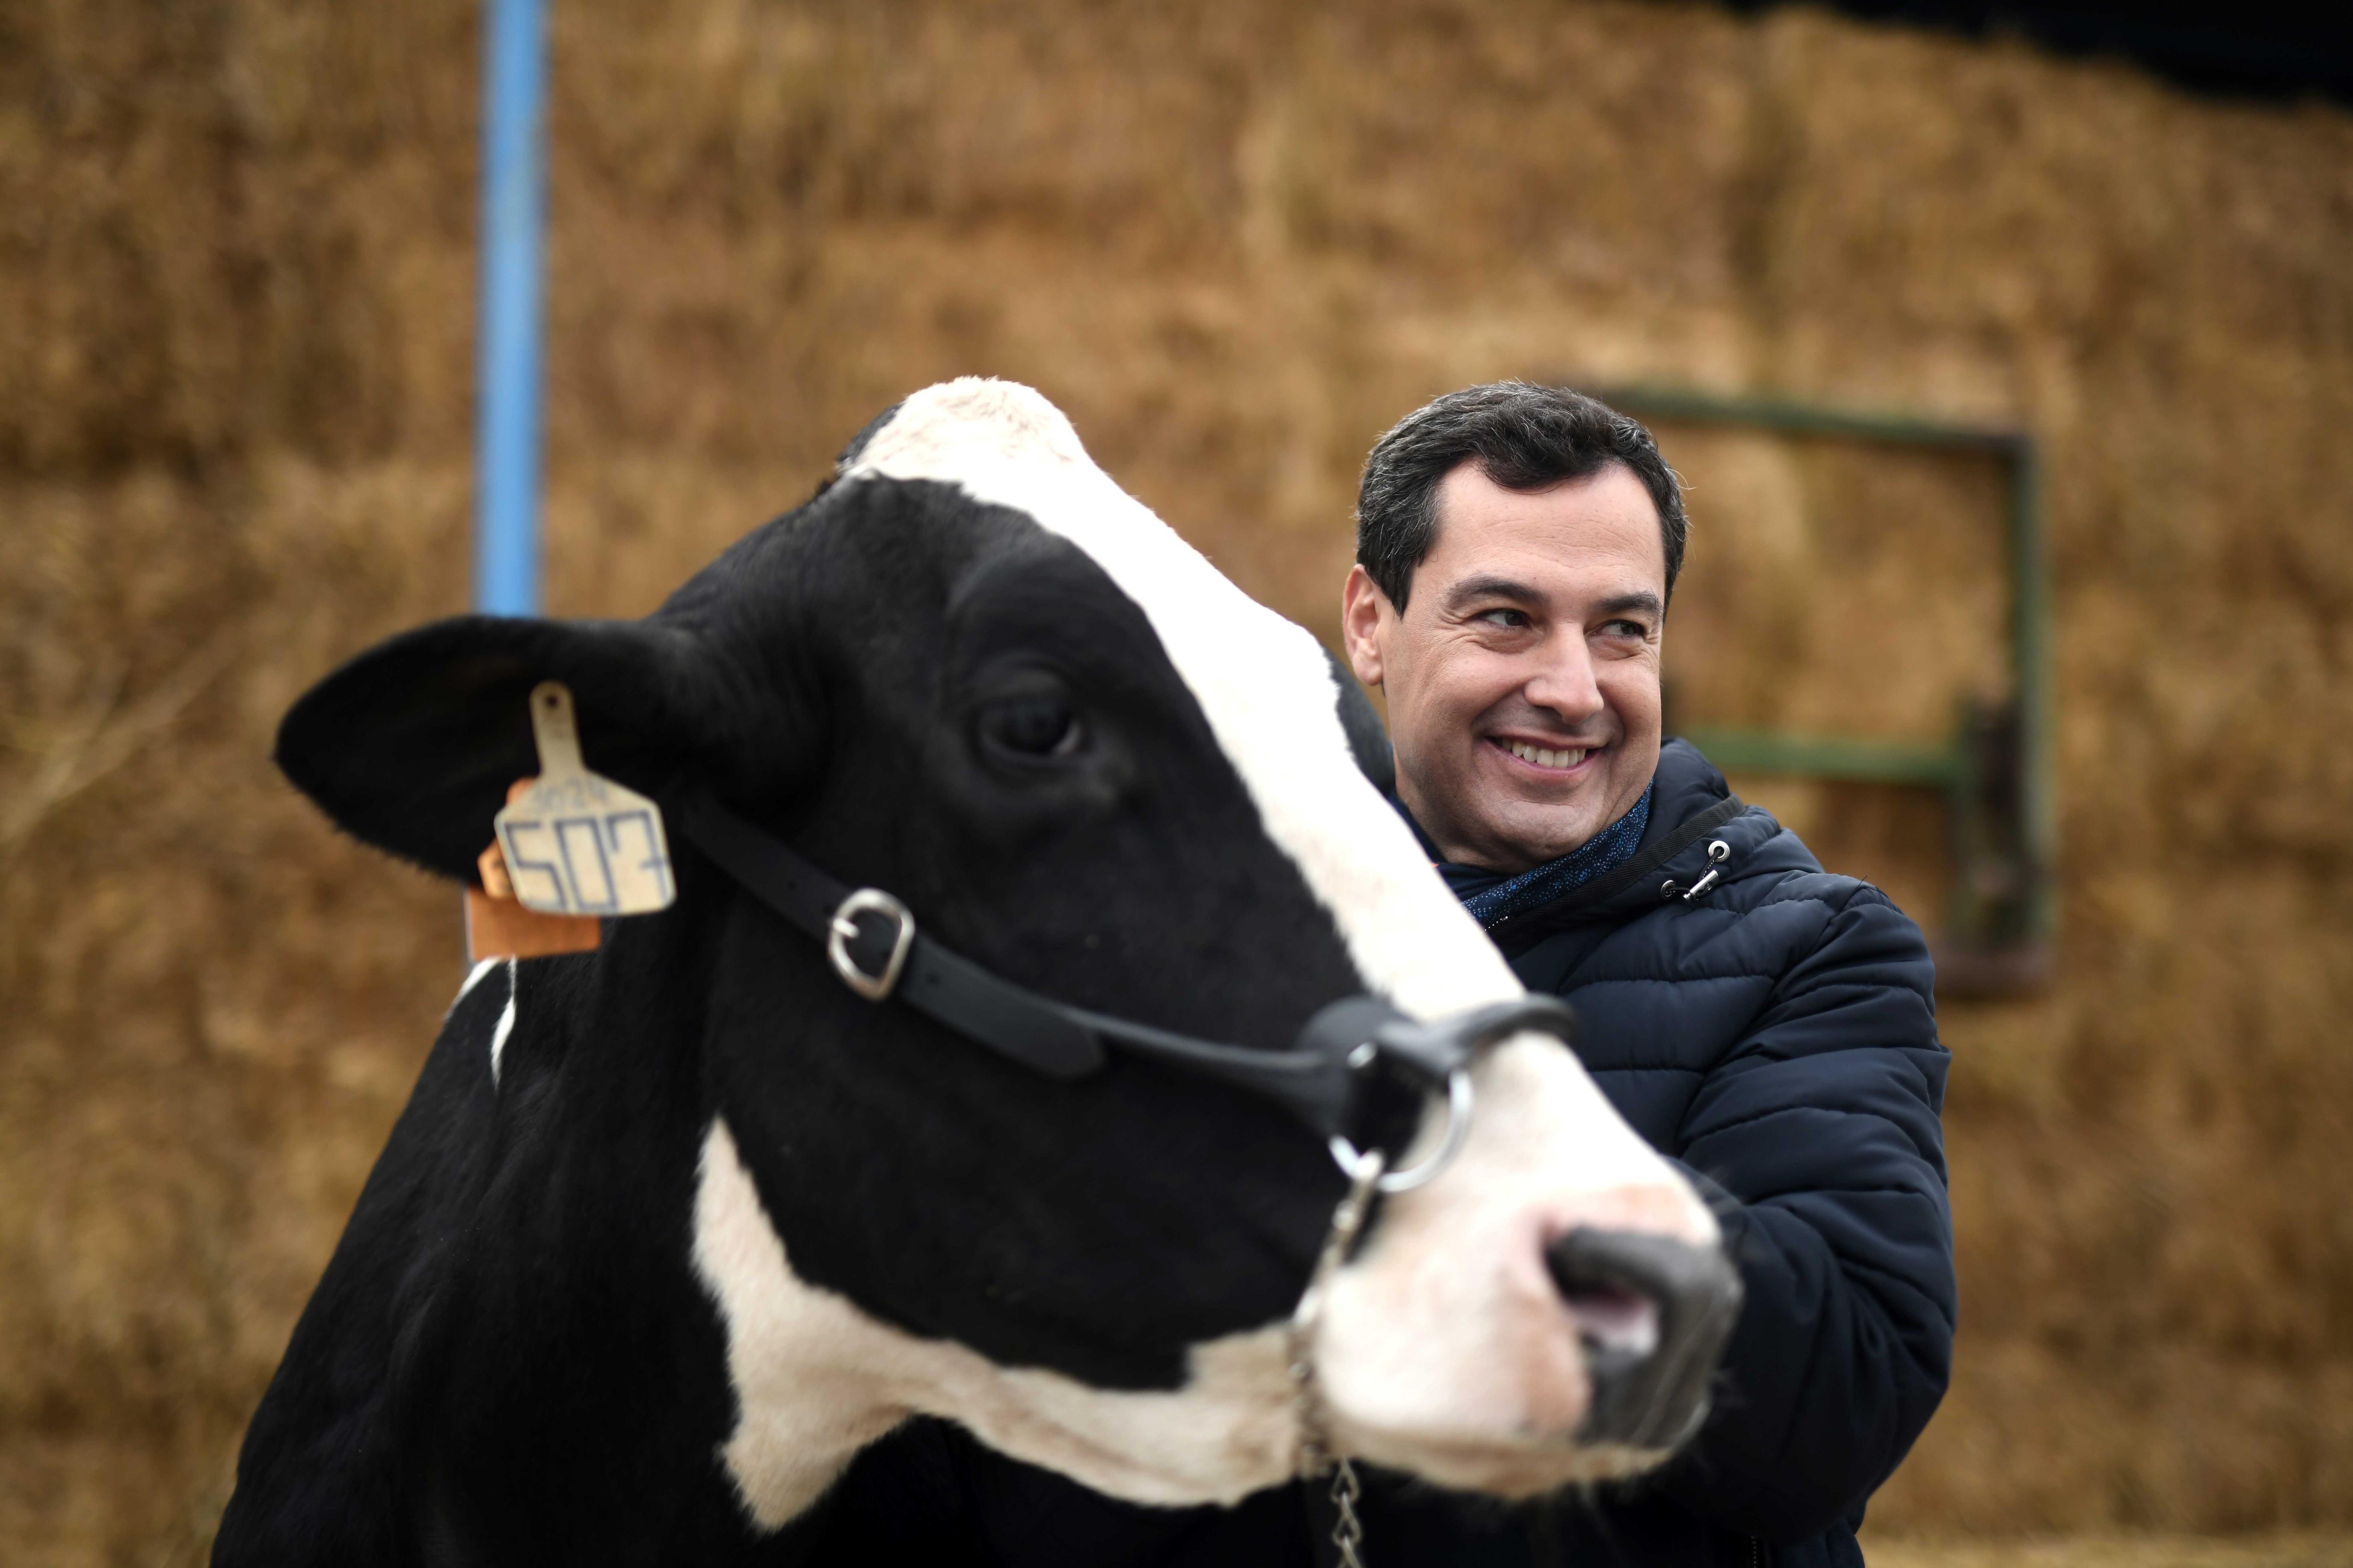 La surrealista conversación entre el candidato del PP y una vaca